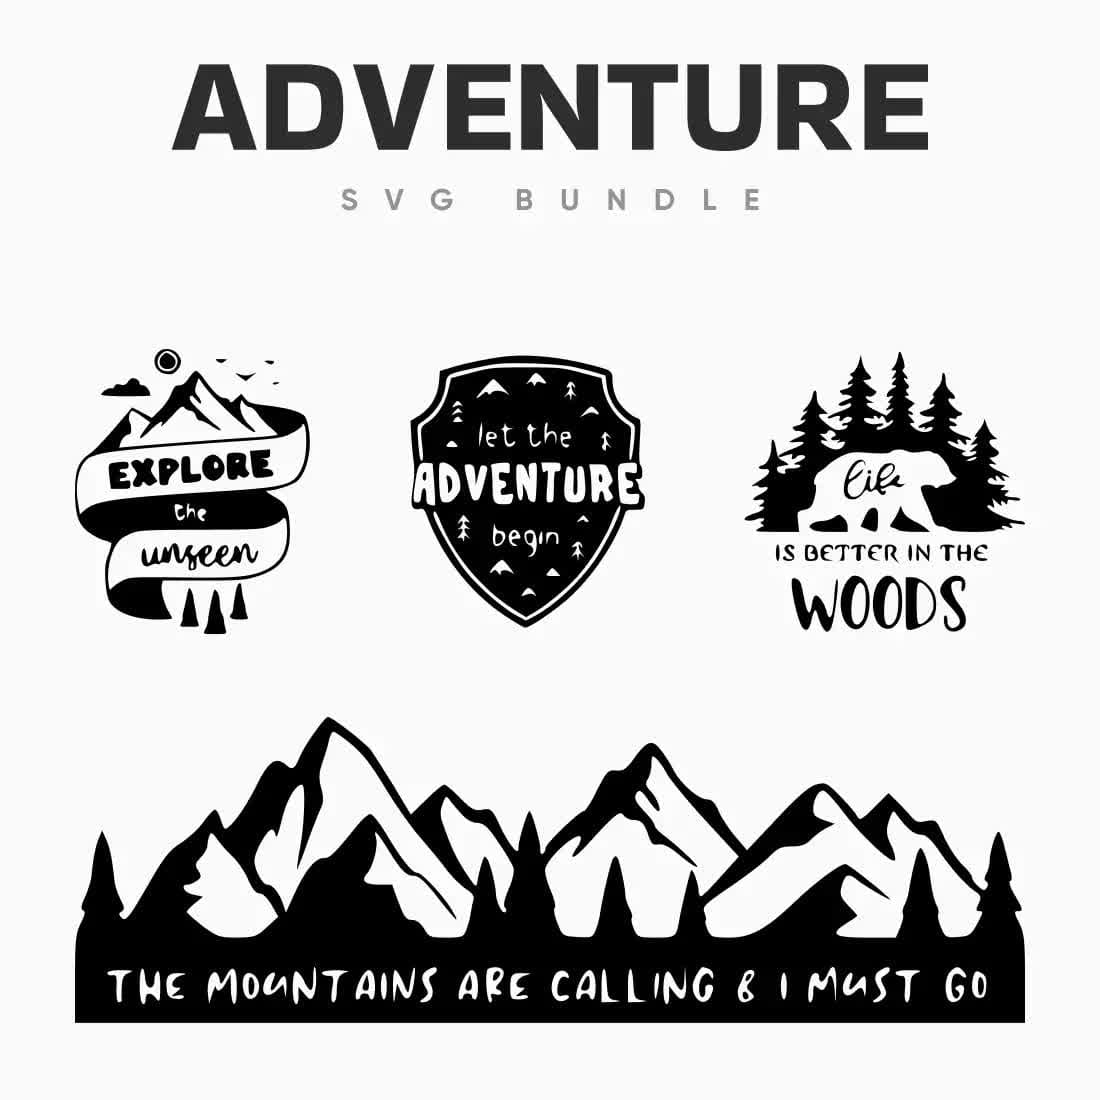 Adventure SVG Bundle Preview 3.